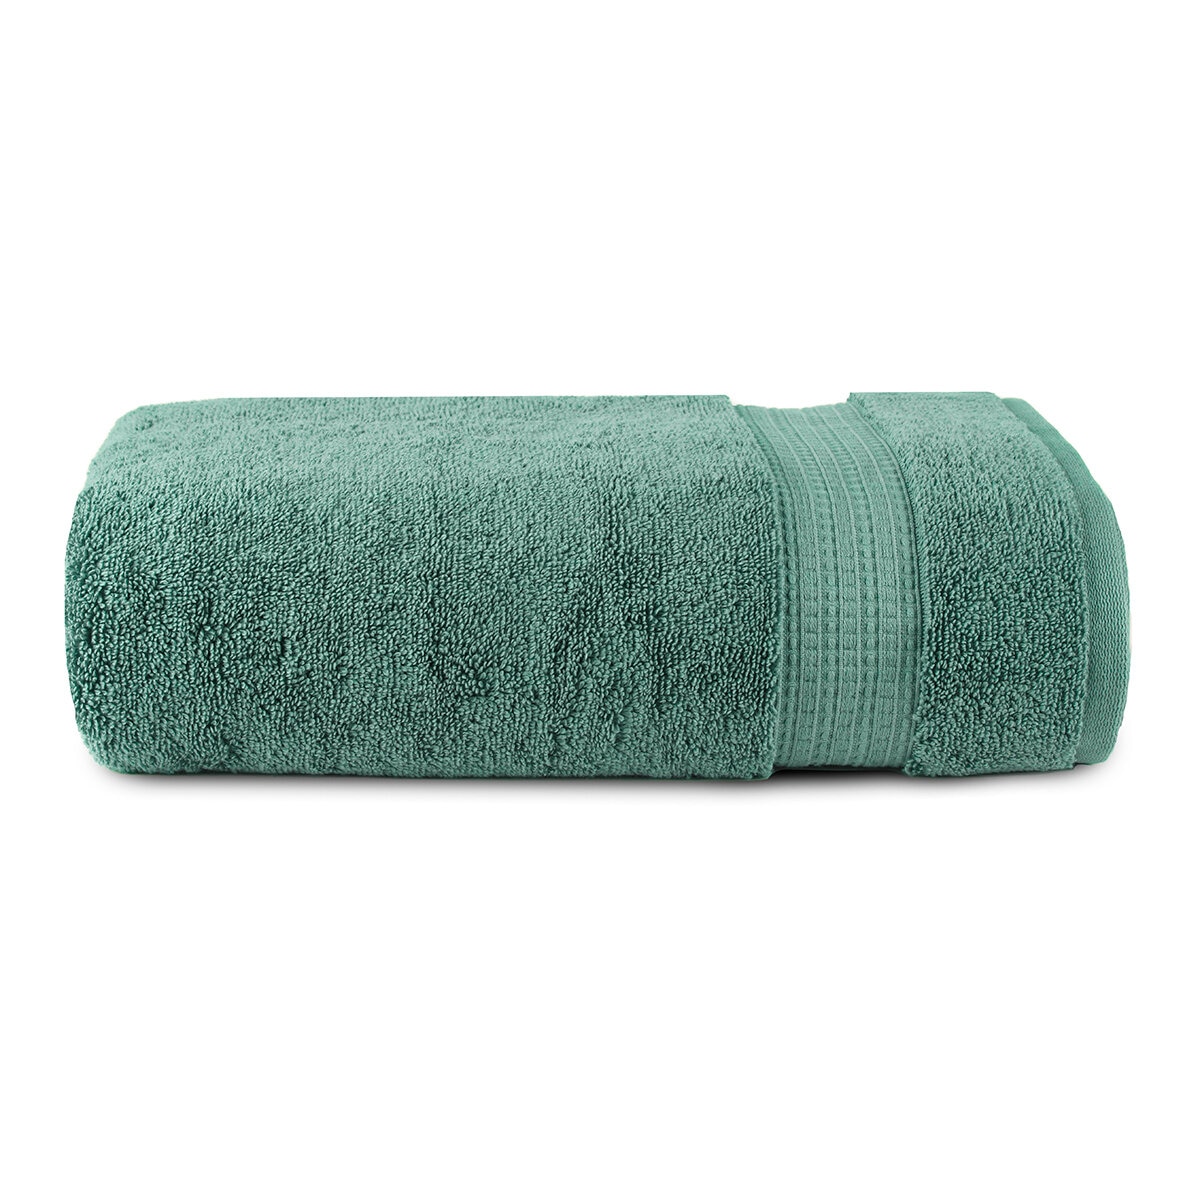 Puffy Cotton Toalla de baño grande – Toalla de baño de gran tamaño (hotel,  spa, bañera) súper suave y absorbente (verde)